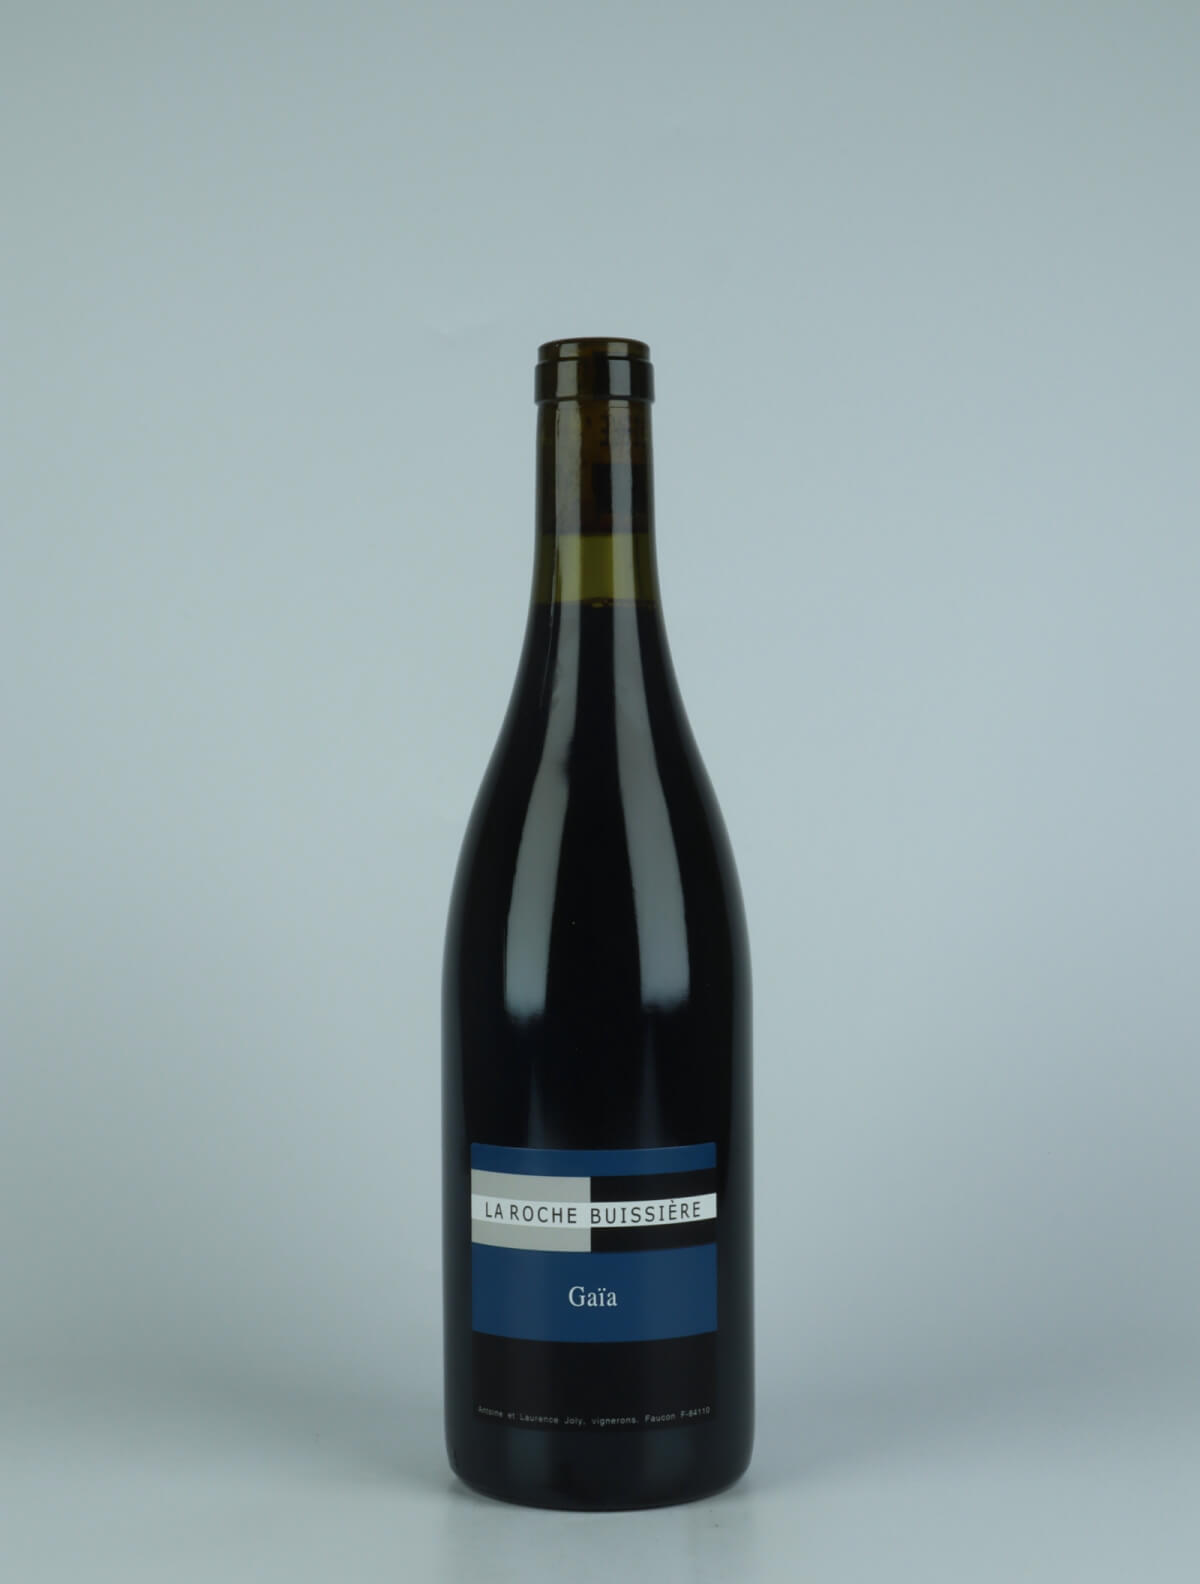 A bottle 2020 Gaïa Red wine from La Roche Buissière, Rhône in France